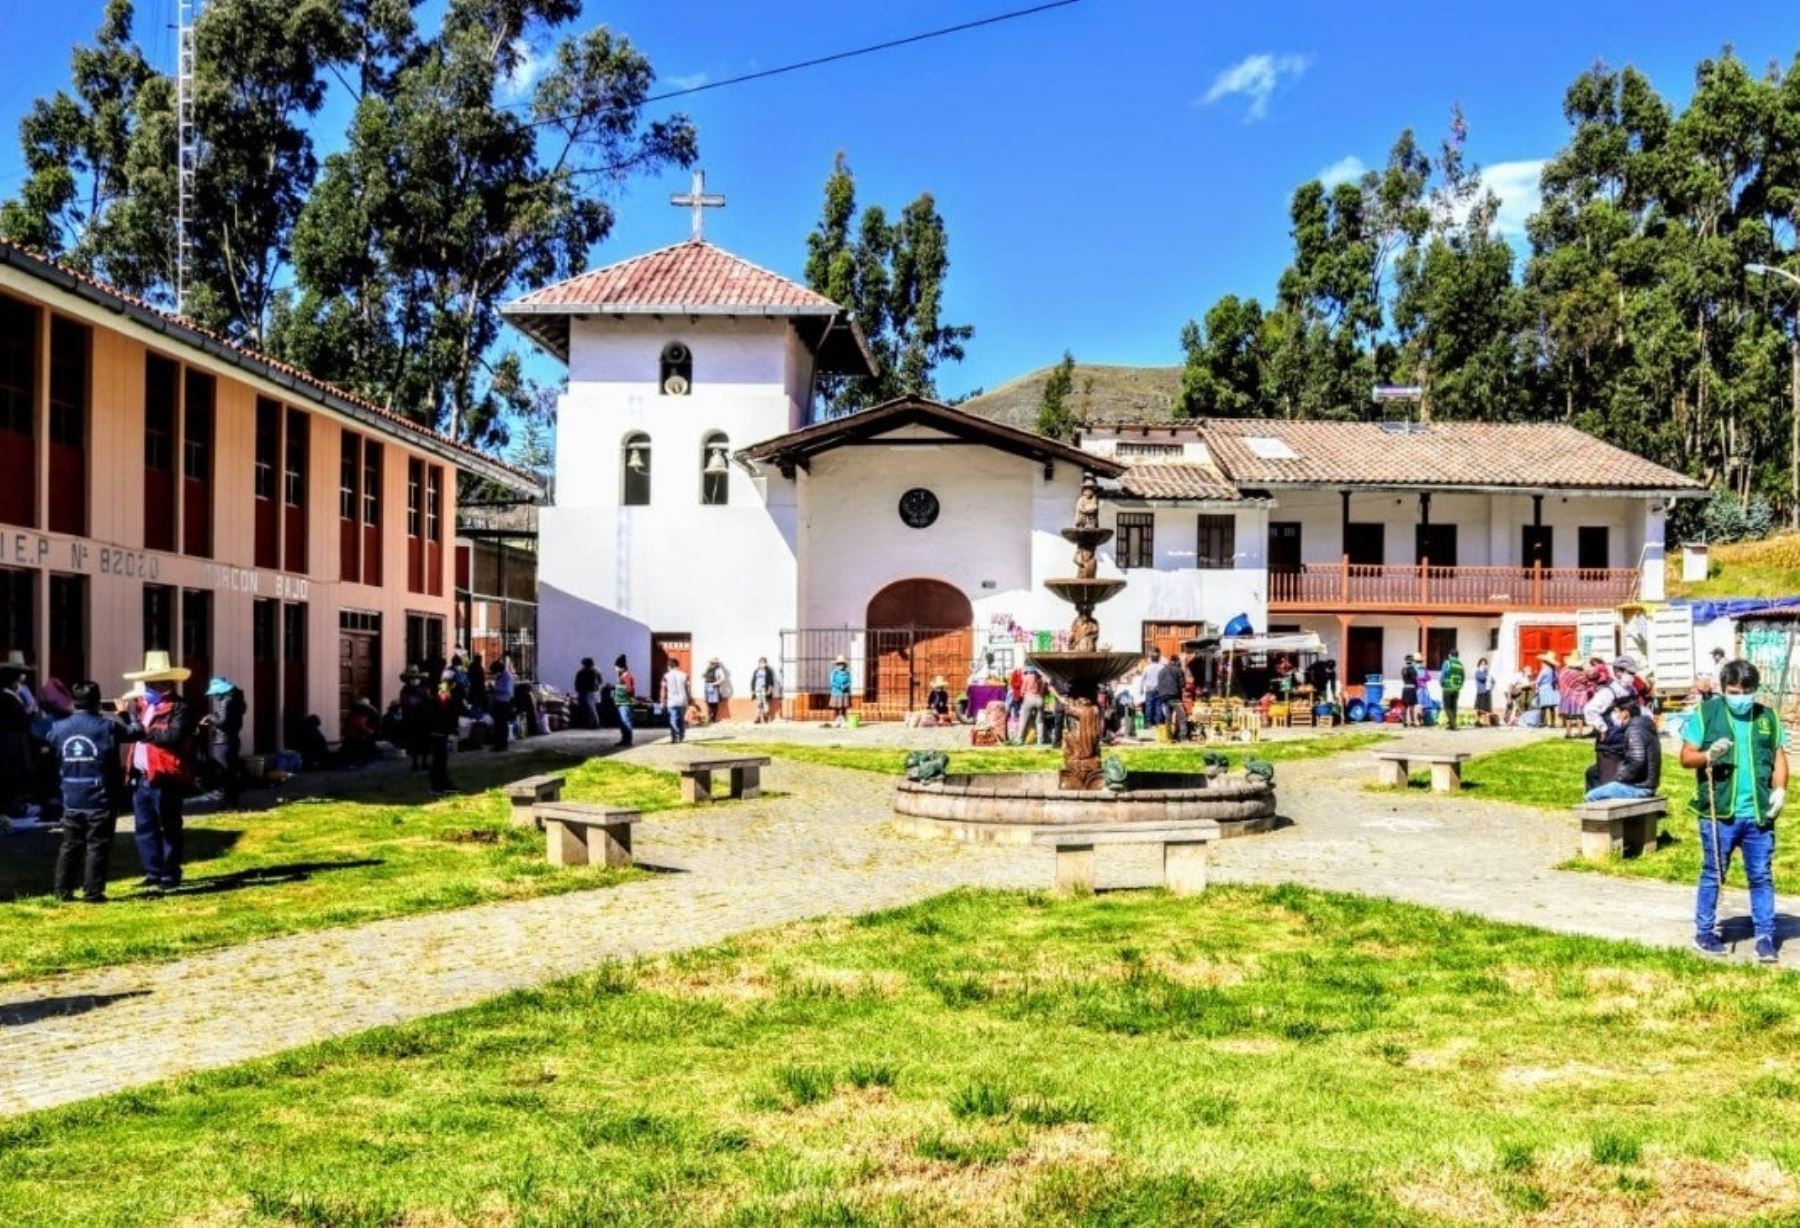 Municipalidad de Cajamarca anuncia beneficios tributarios y otras medidas para reactivar la economía local. Anunció también que unirá esfuerzos con diversos sectores para evitar propagación del coronavirus Foto: Eduard Lozano